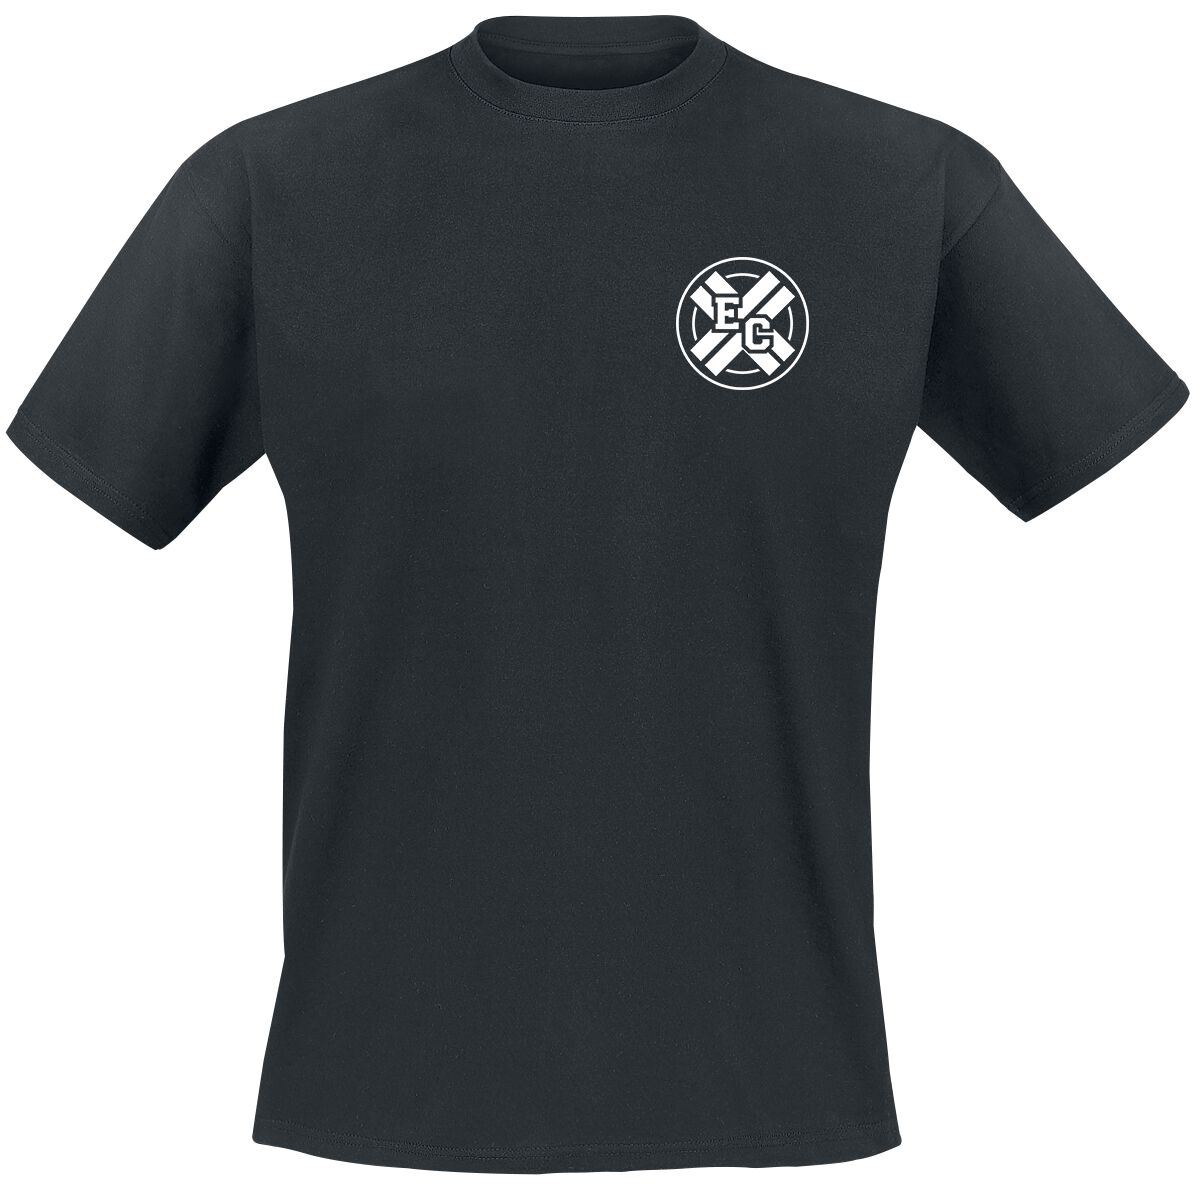 Electric Callboy T-Shirt - Pump It Better - S bis 3XL - für Männer - Größe M - schwarz  - Lizenziertes Merchandise!